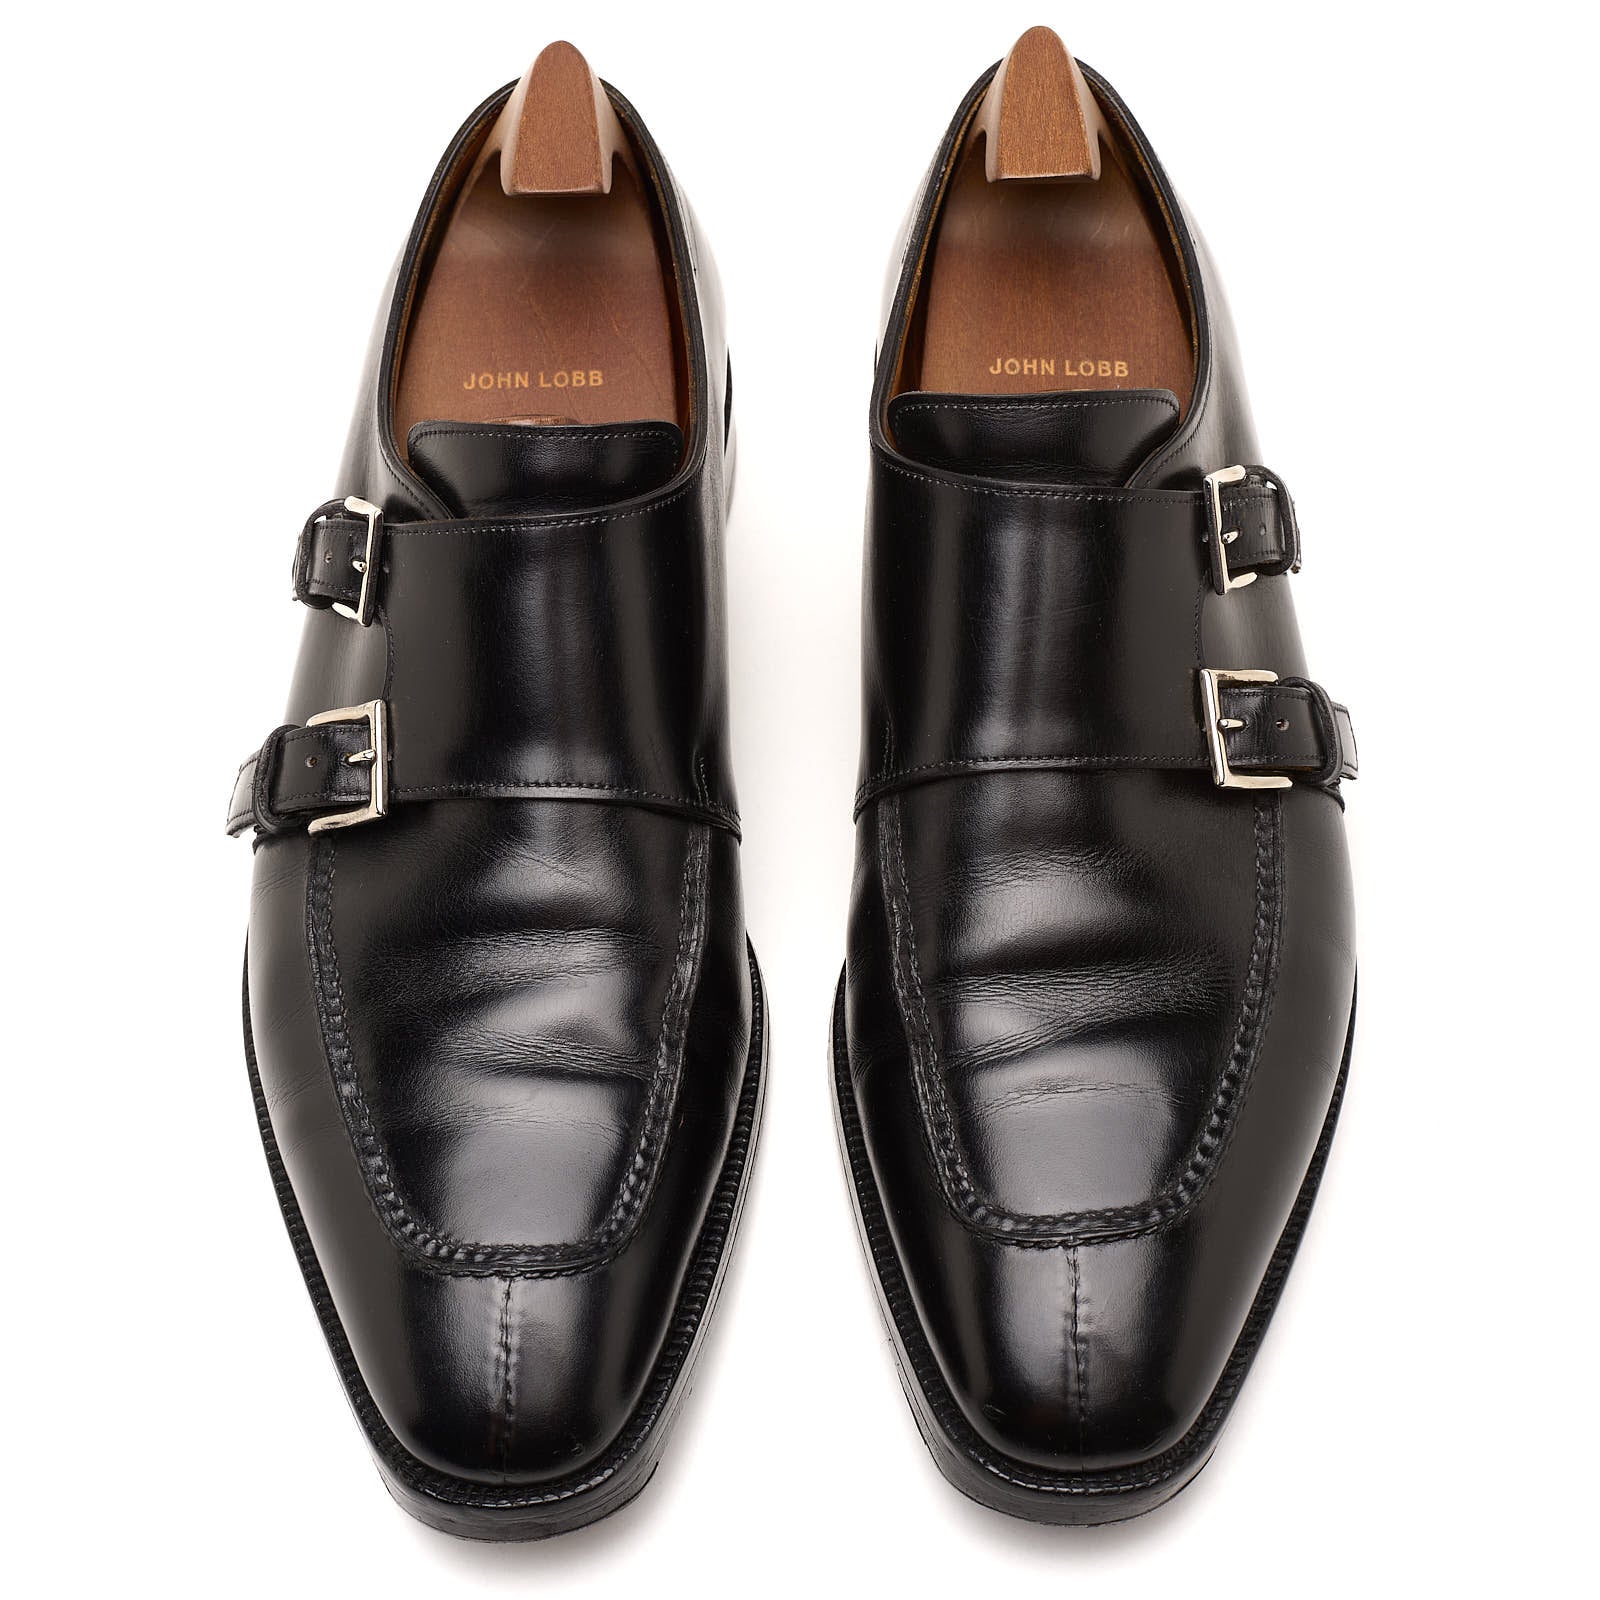 JOHN LOBB "Vintage 2000" Fulham Black Double Monk Shoes UK 9 E US 10